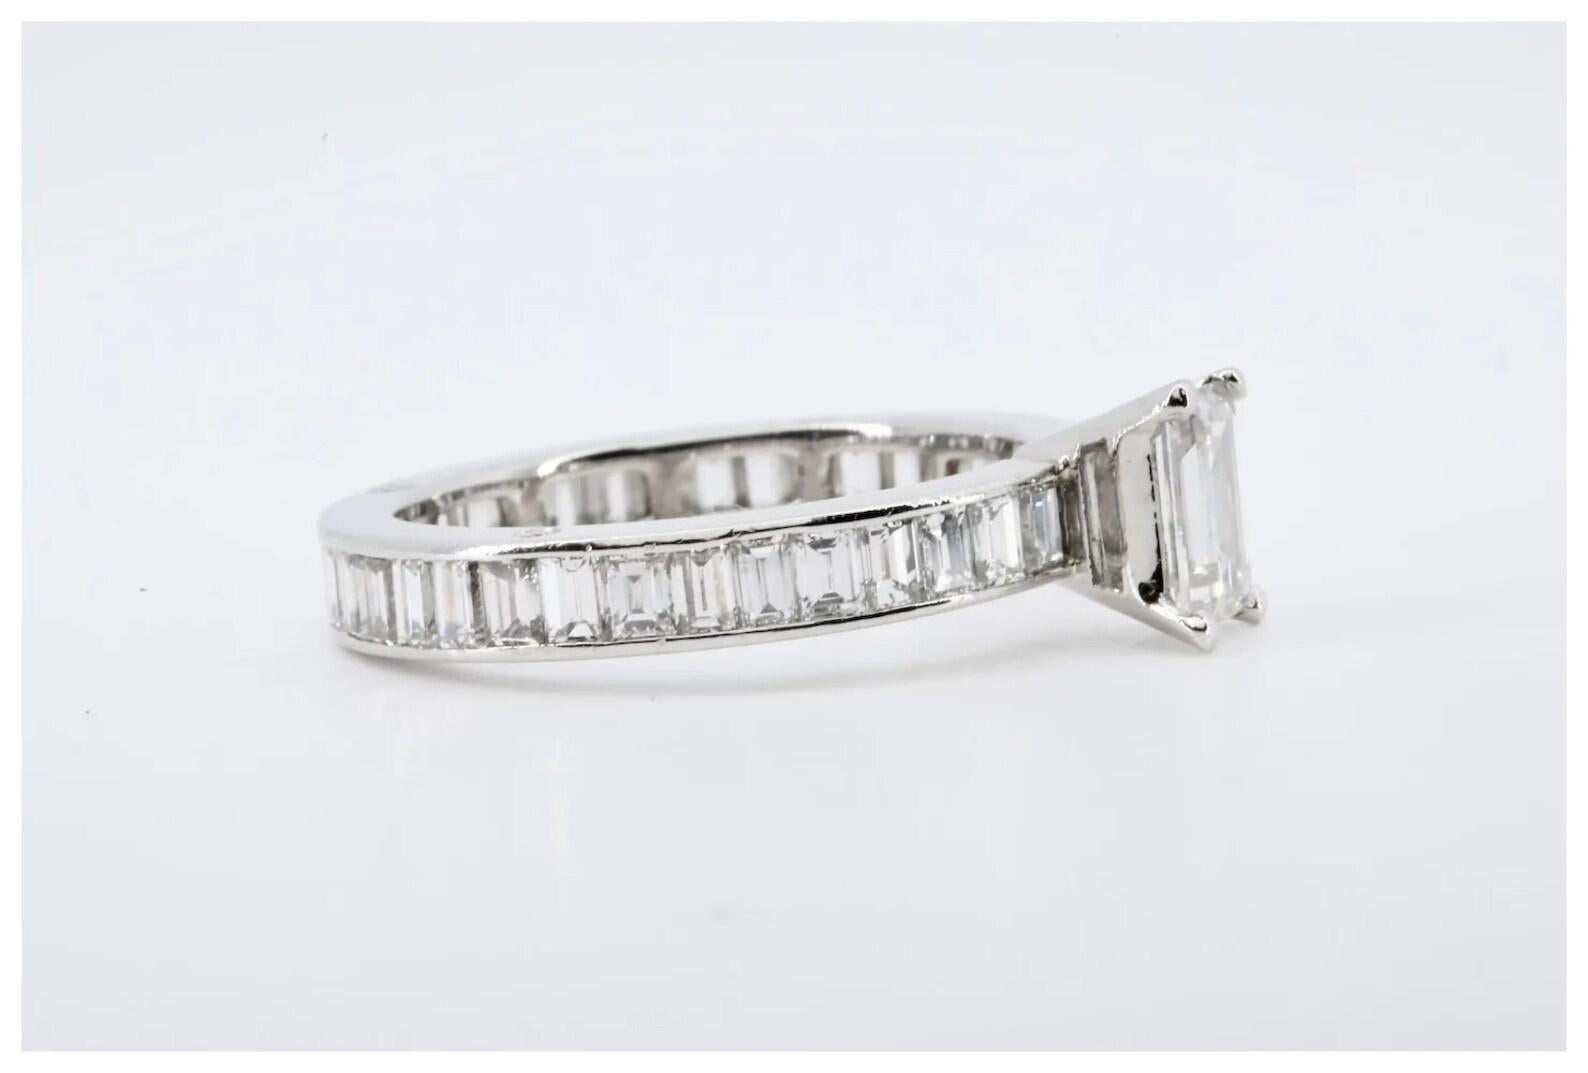 Ein Art-Deco-Verlobungsring aus Platin mit Smaragdschliff-Diamanten. Das Band ist mit achtunddreißig weiteren Smaragddiamanten besetzt.

Im Mittelpunkt steht ein 0,85 Karat schwerer Diamant im Smaragdschliff mit der Farbe H und der Reinheit